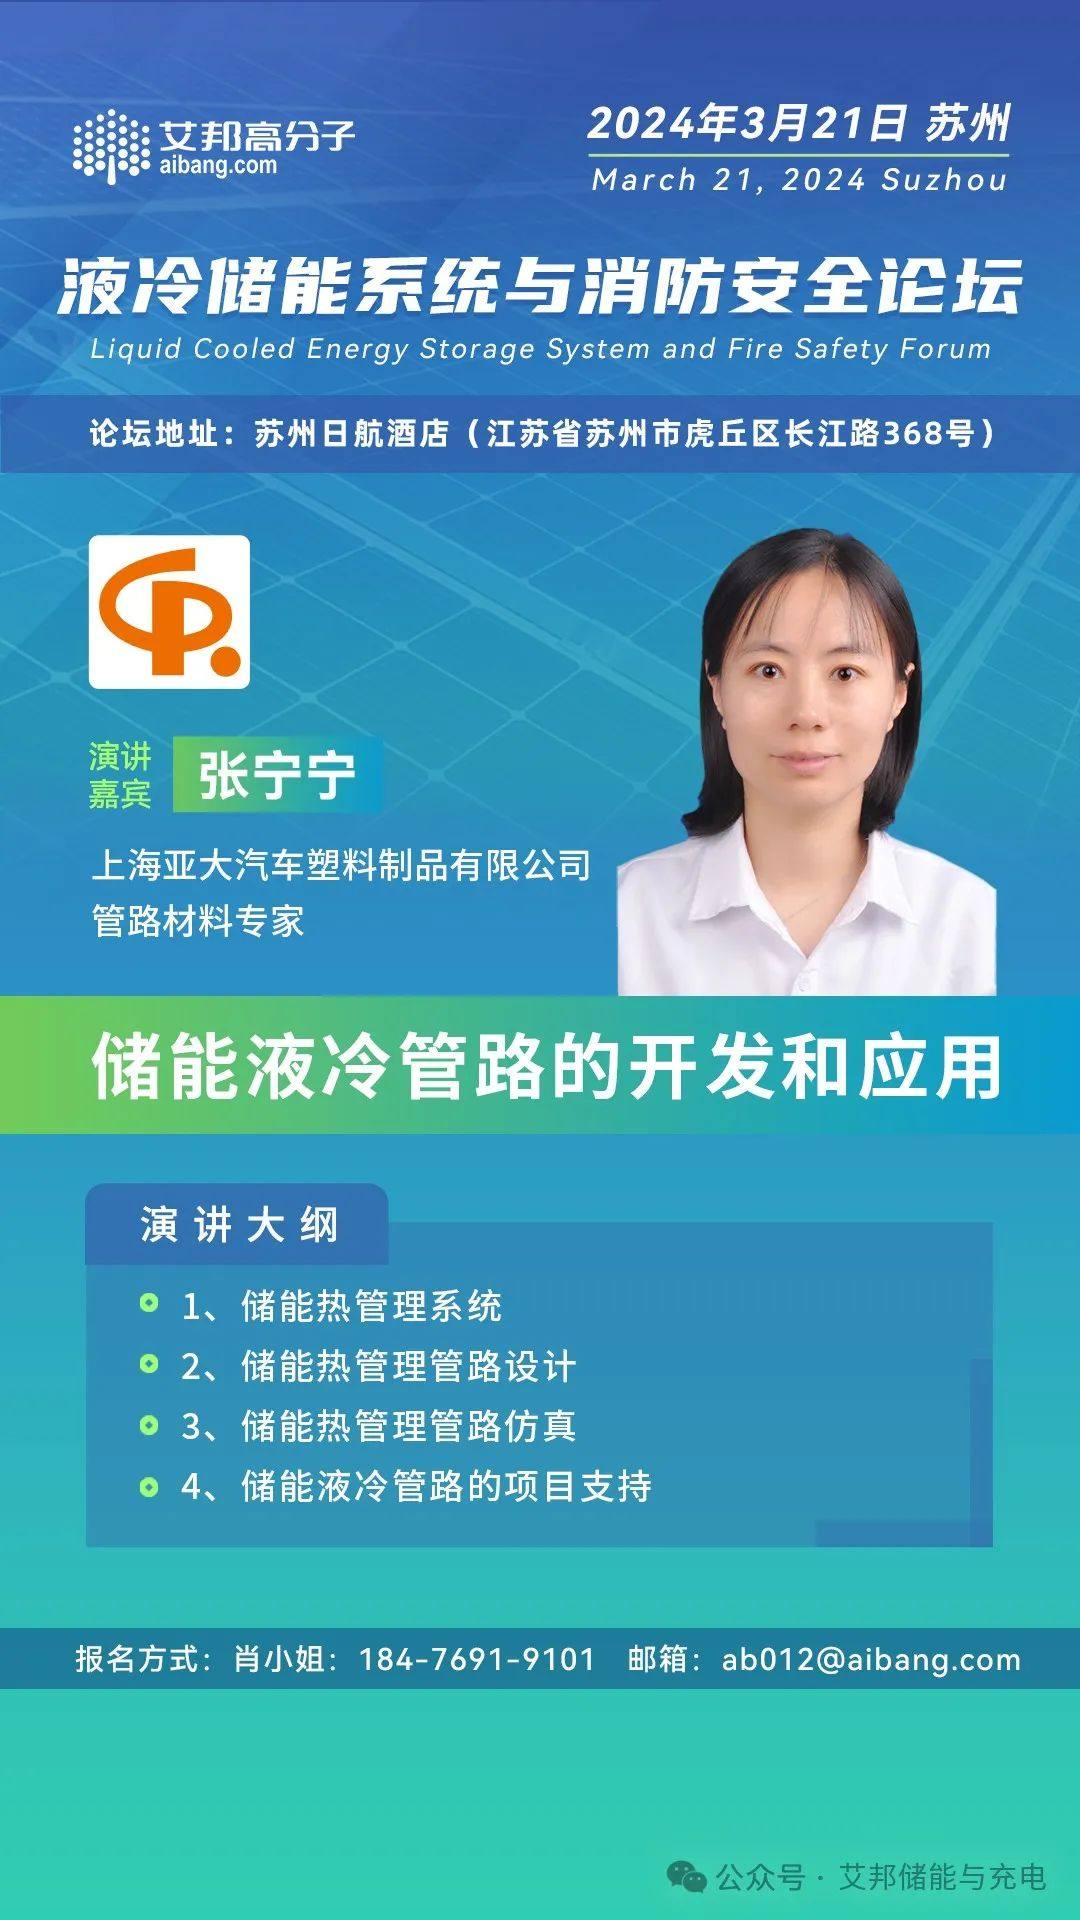 【论坛报告】上海亚大：储能液冷管路的开发和应用